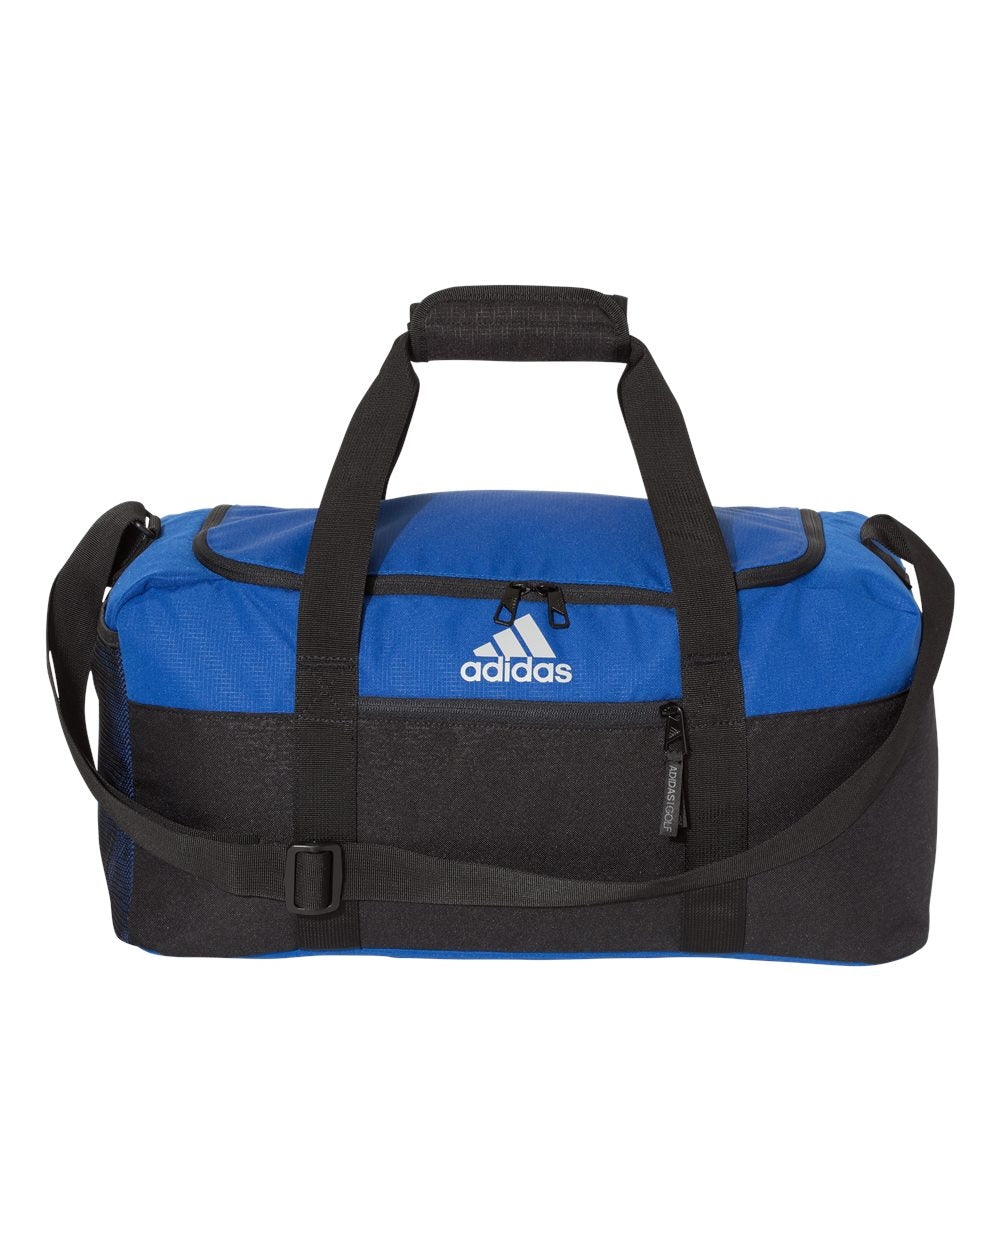 Adidas - 35L Weekend Duffel Bag - A311